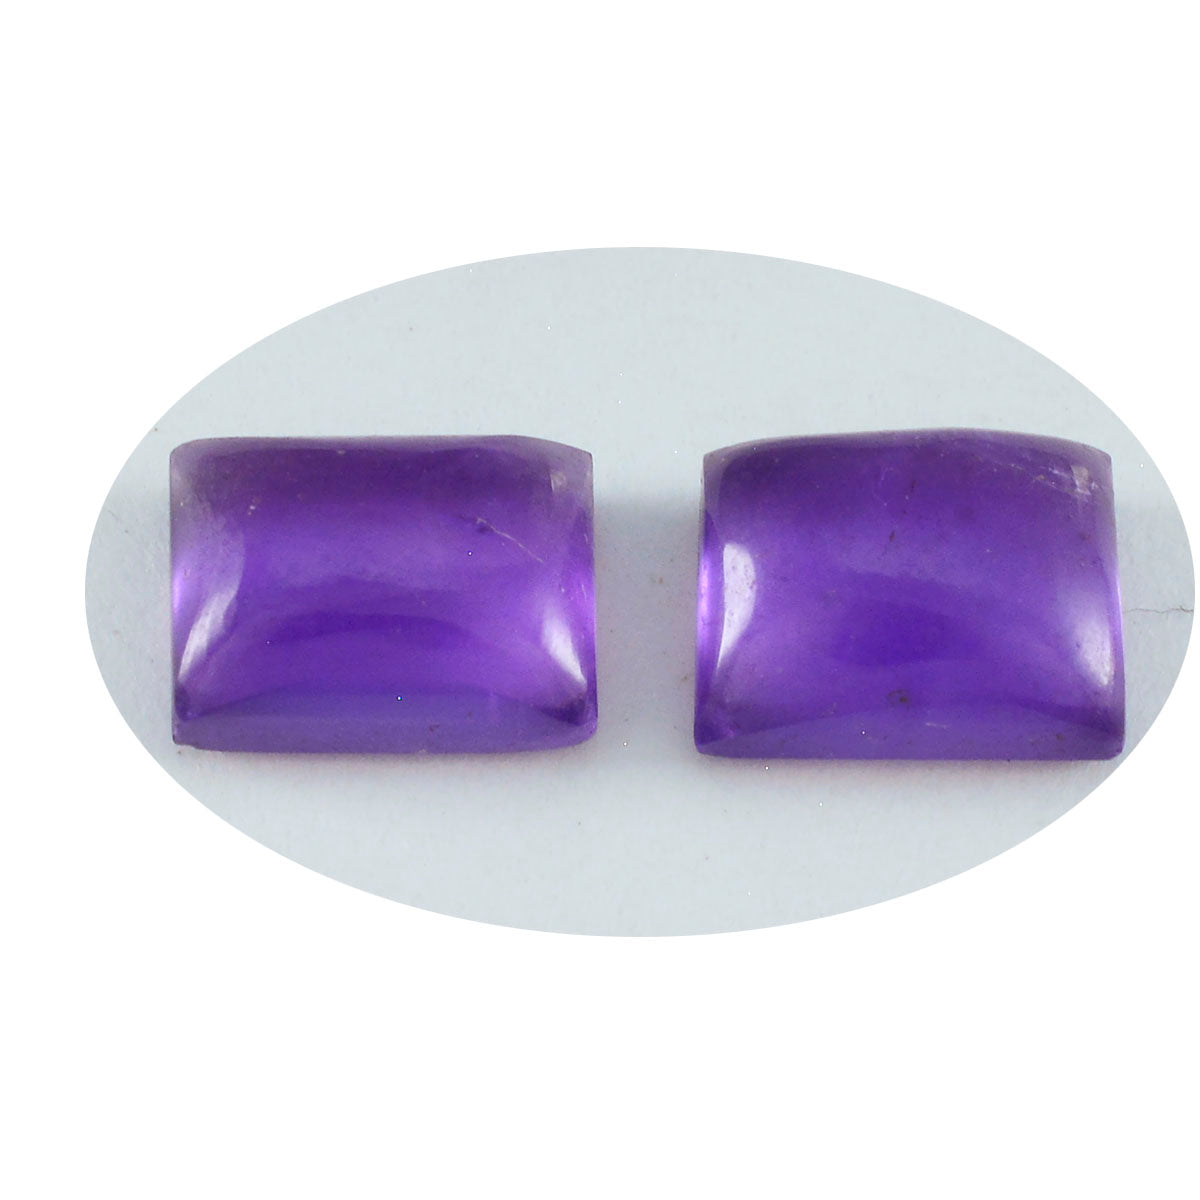 Riyogems 1 pieza cabujón de amatista púrpura 8x10 mm forma octágono piedra preciosa de calidad fantástica